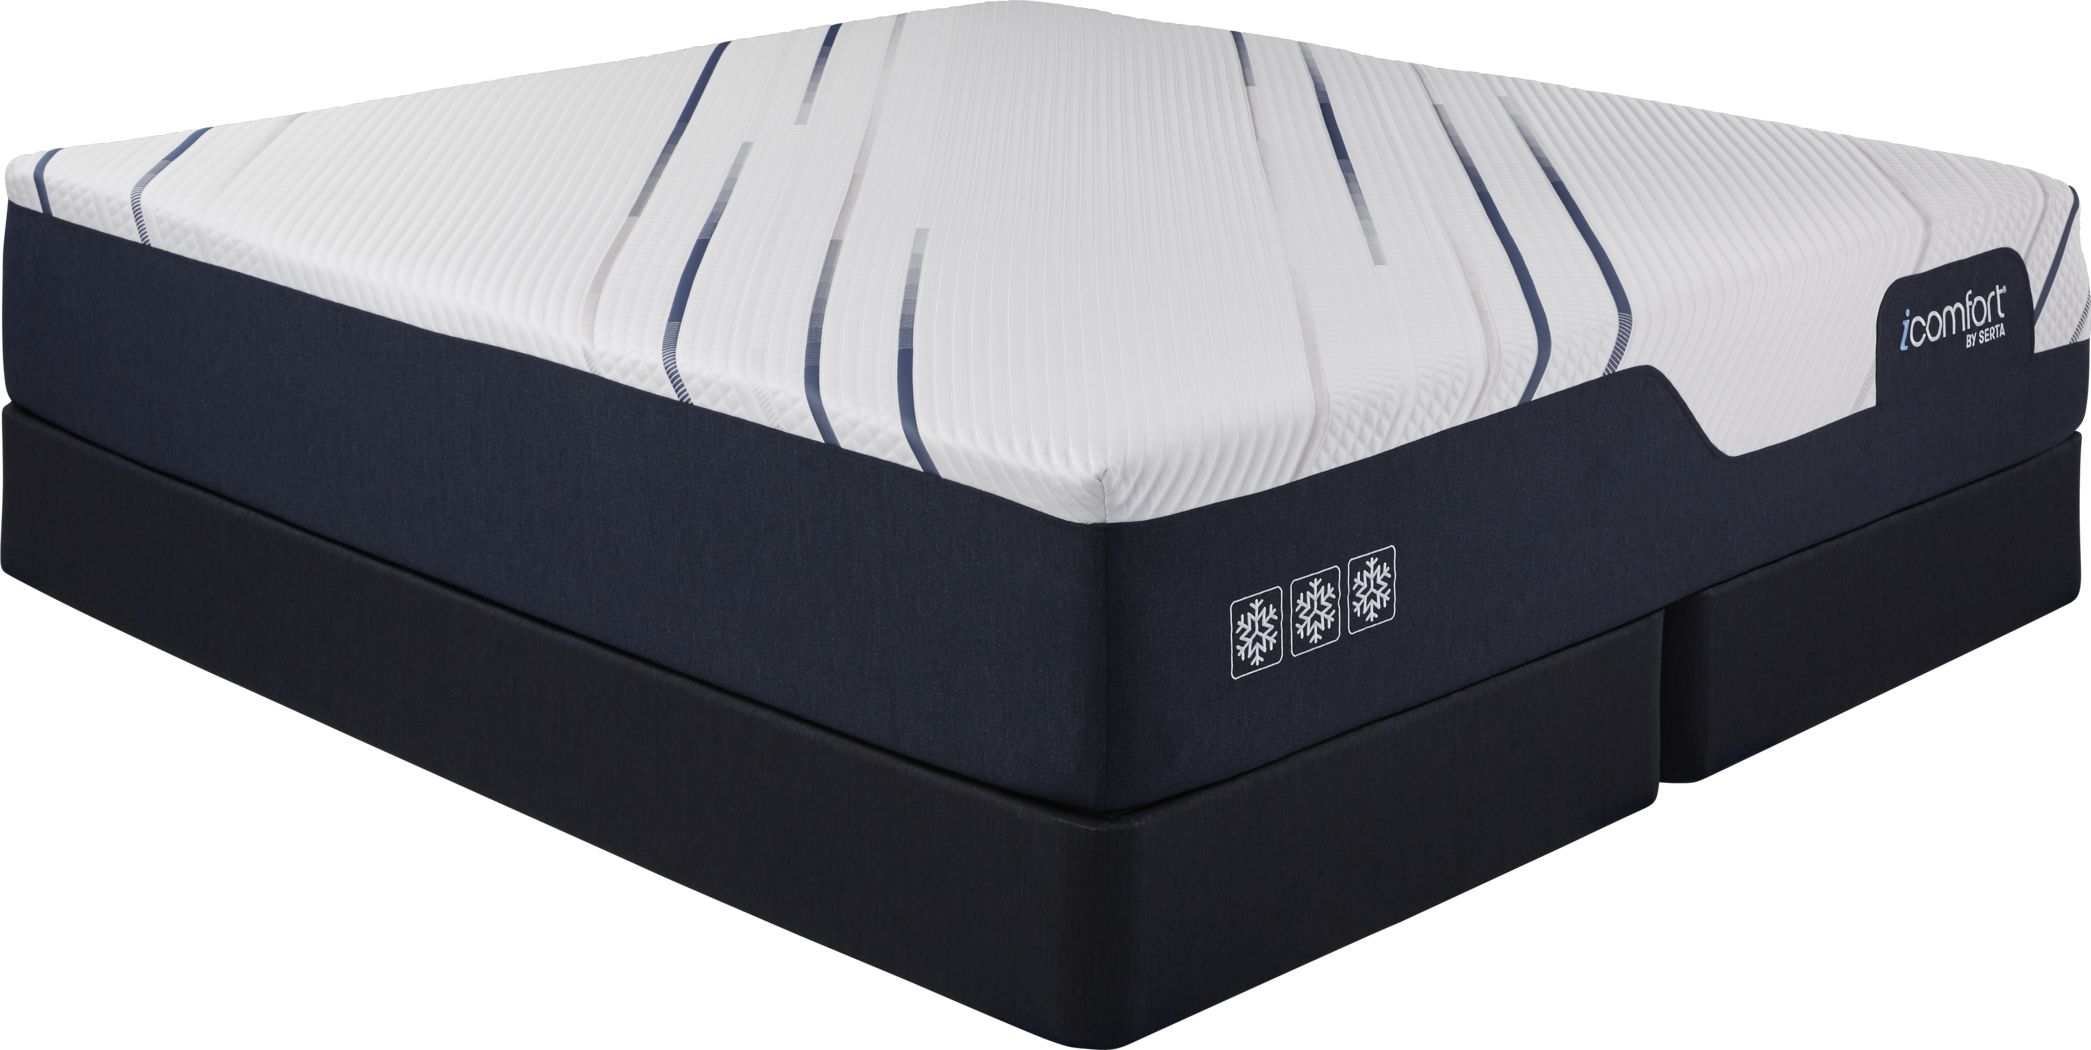 icomfort king mattress set intellectual efx